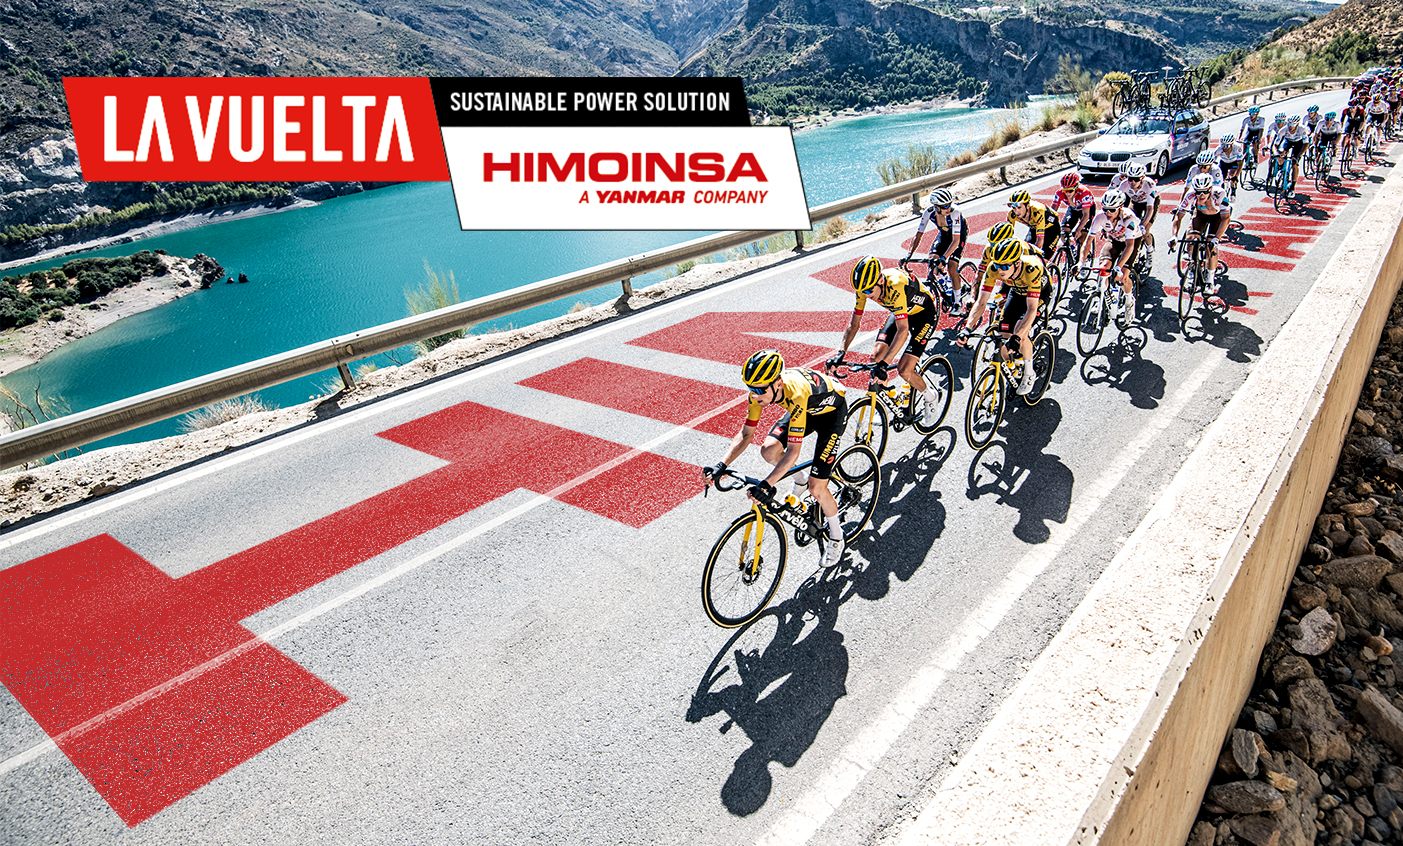 HIMOINSA et La Vuelta s’associent pour garantir un approvisionnement durable en énergie à la compétition cycliste de référence en Espagne